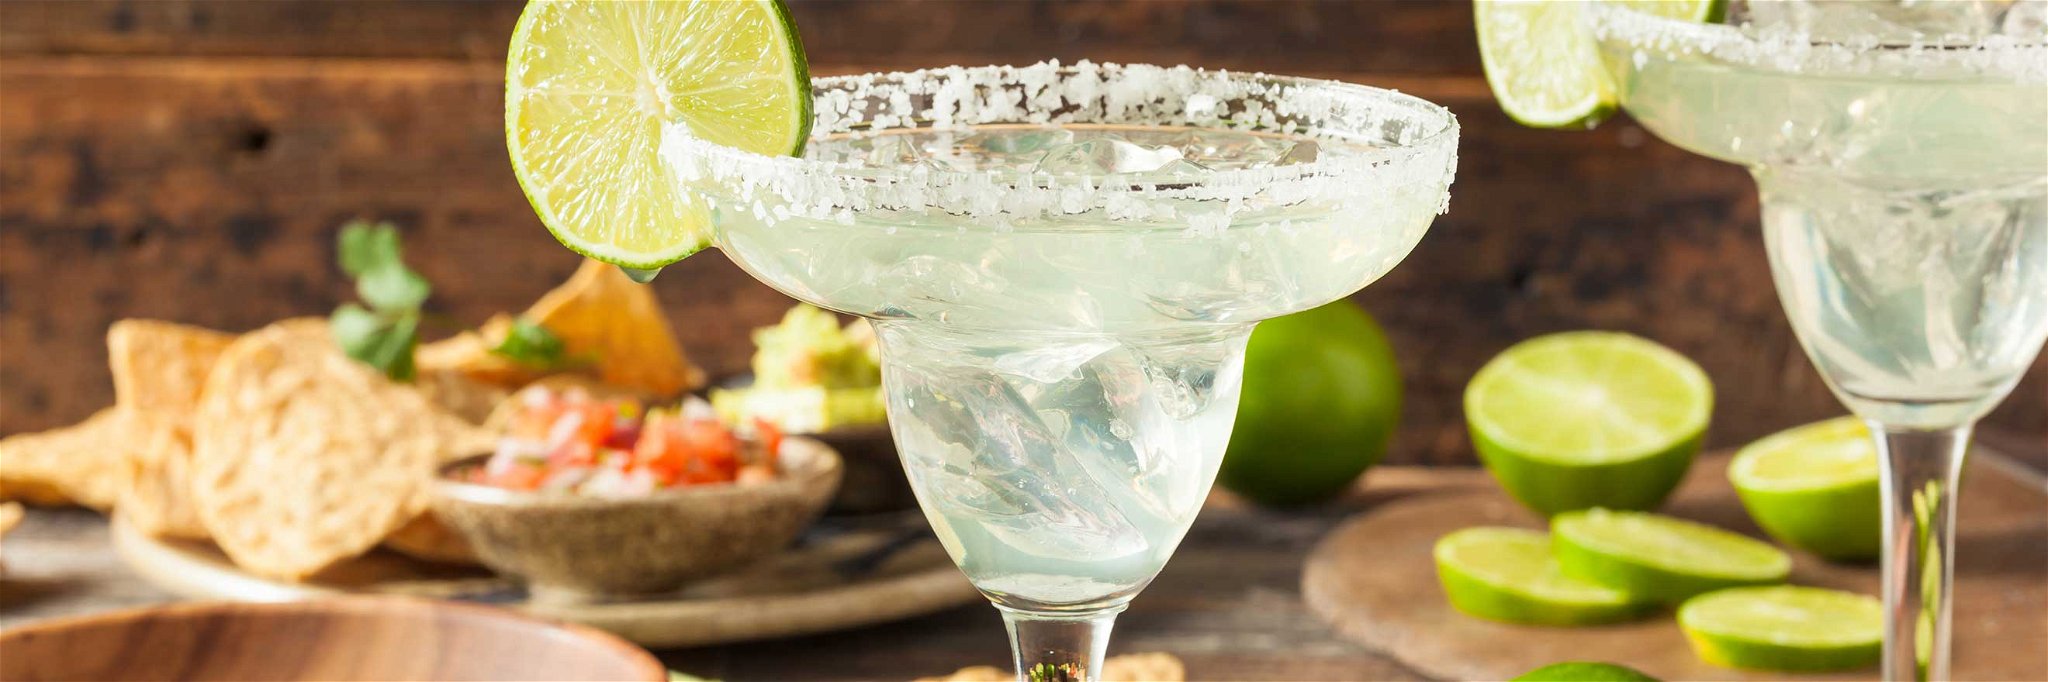 Die Margarita zählt zu den beliebtesten Tequila-Drinks.